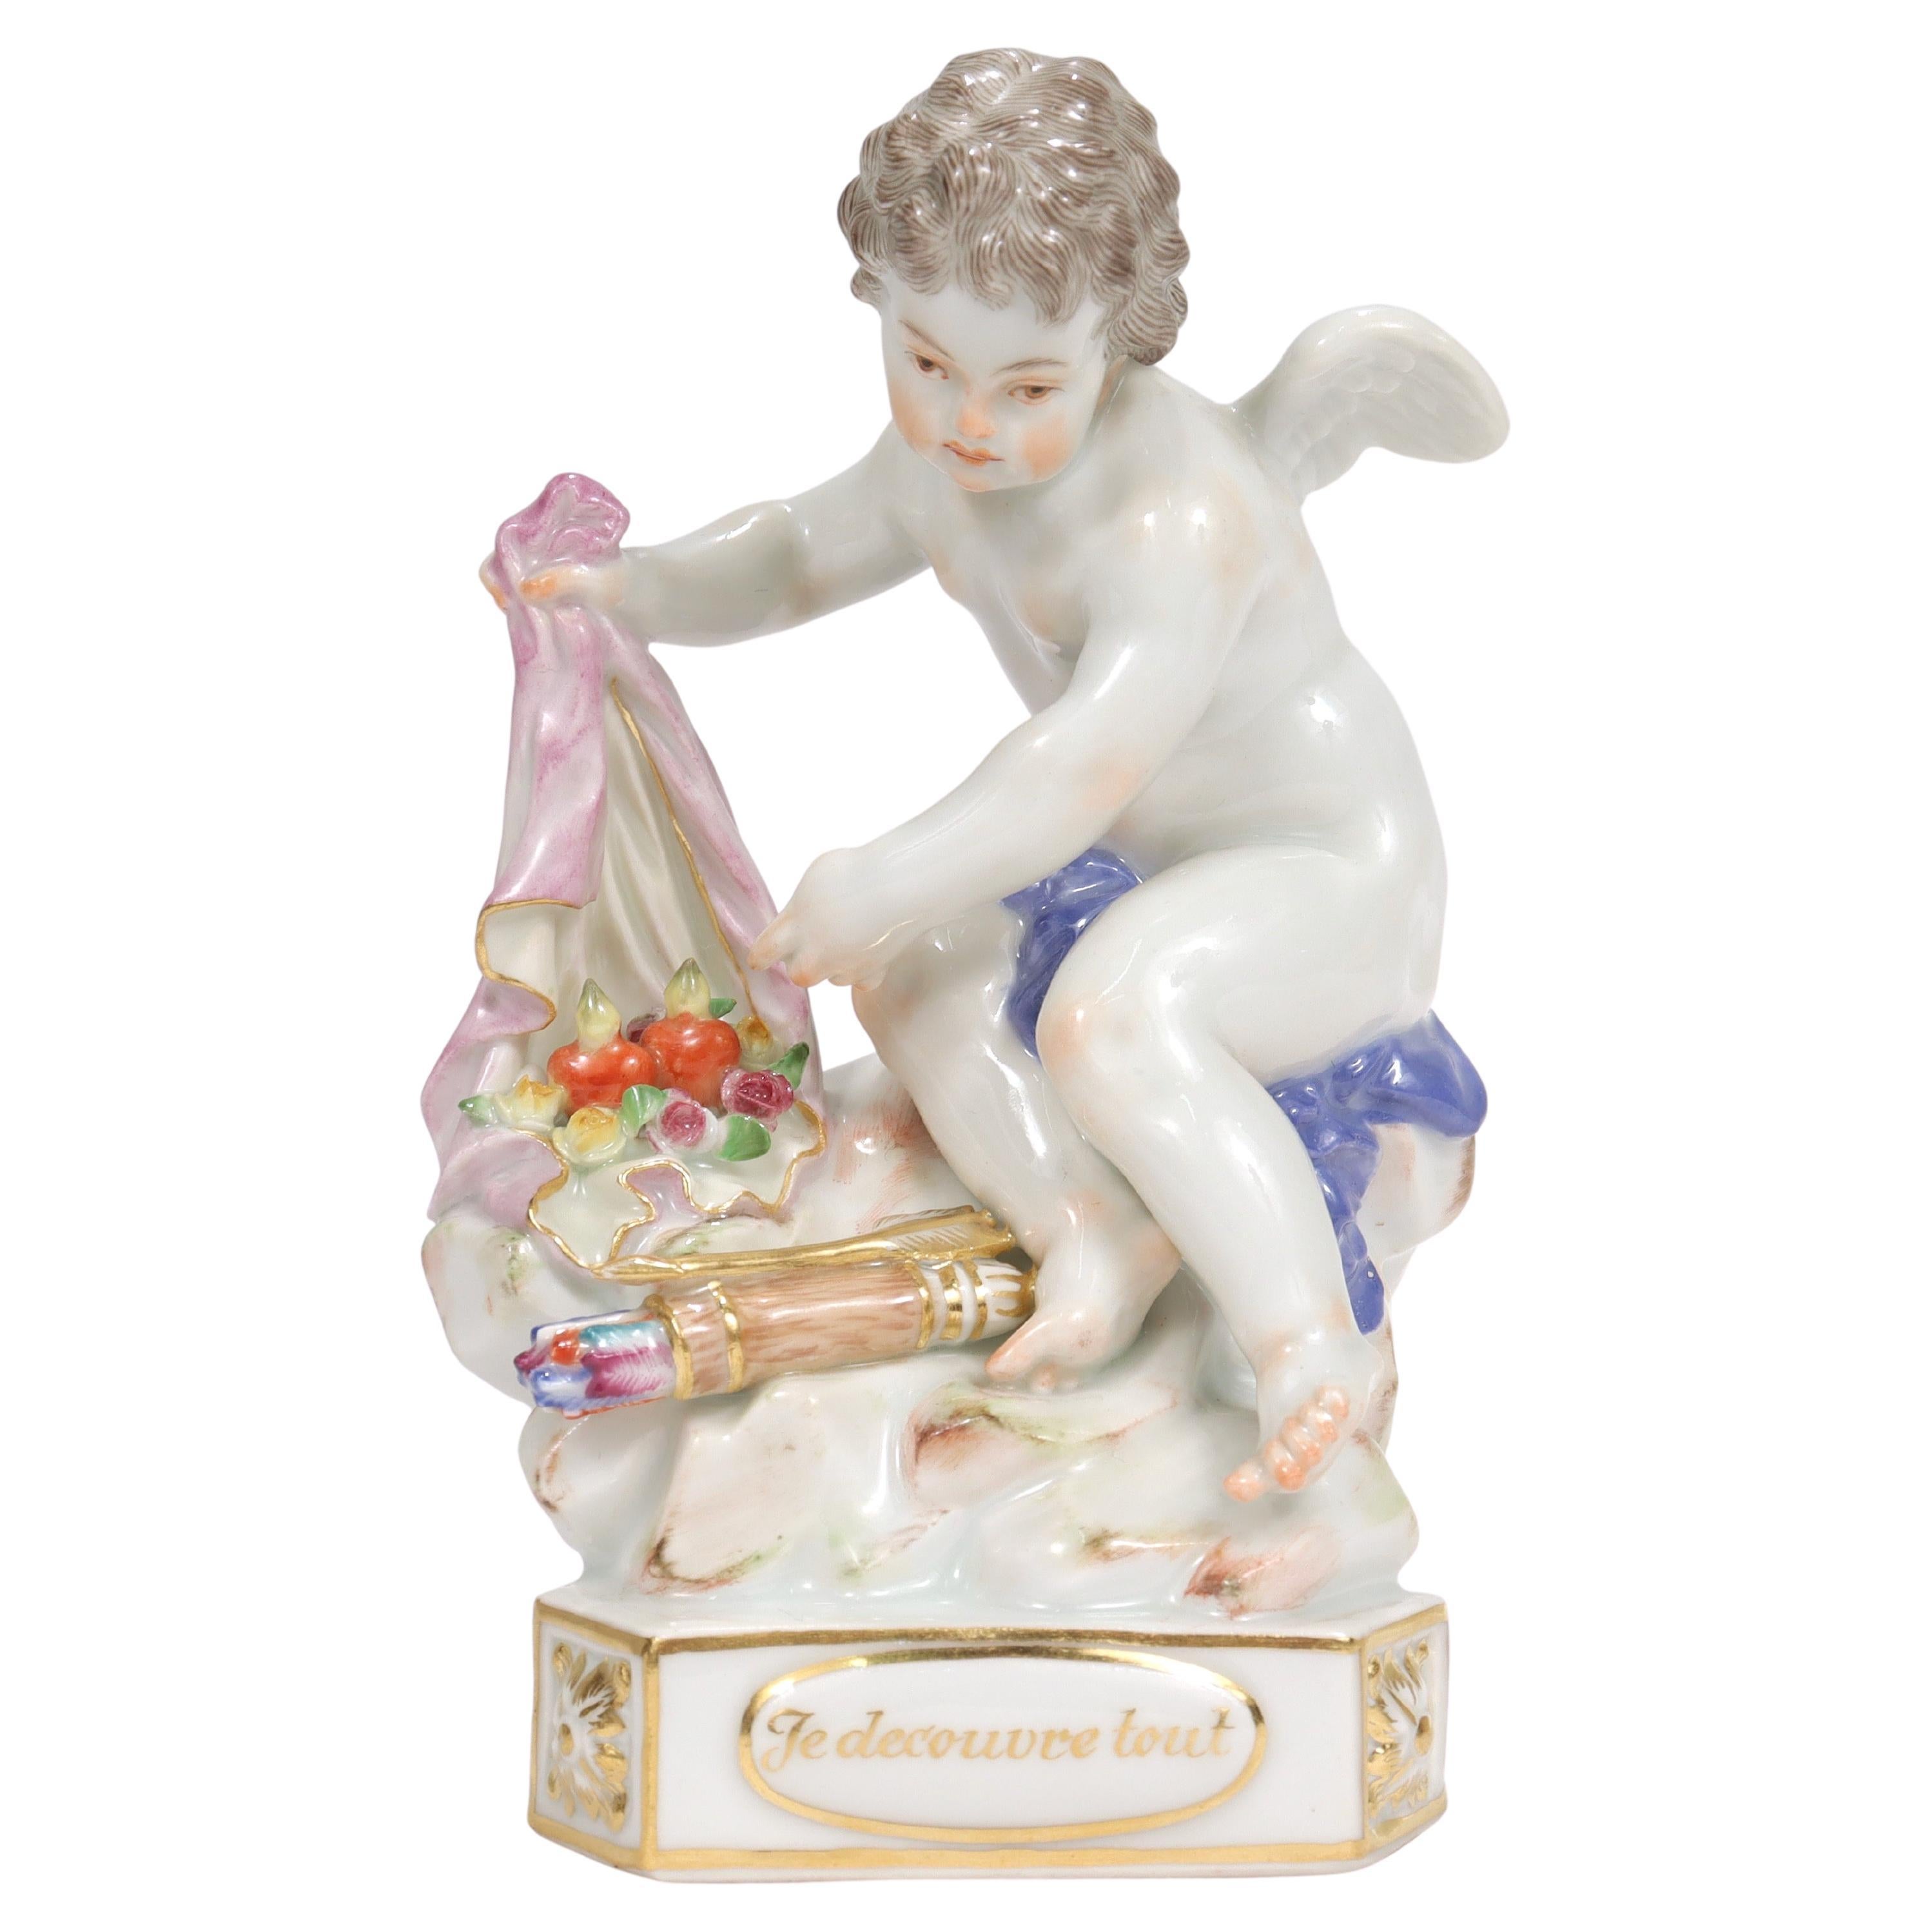 Antique Meissen Porcelain Cherub Motto Figurine "Je decouvre tout" Model F13 For Sale